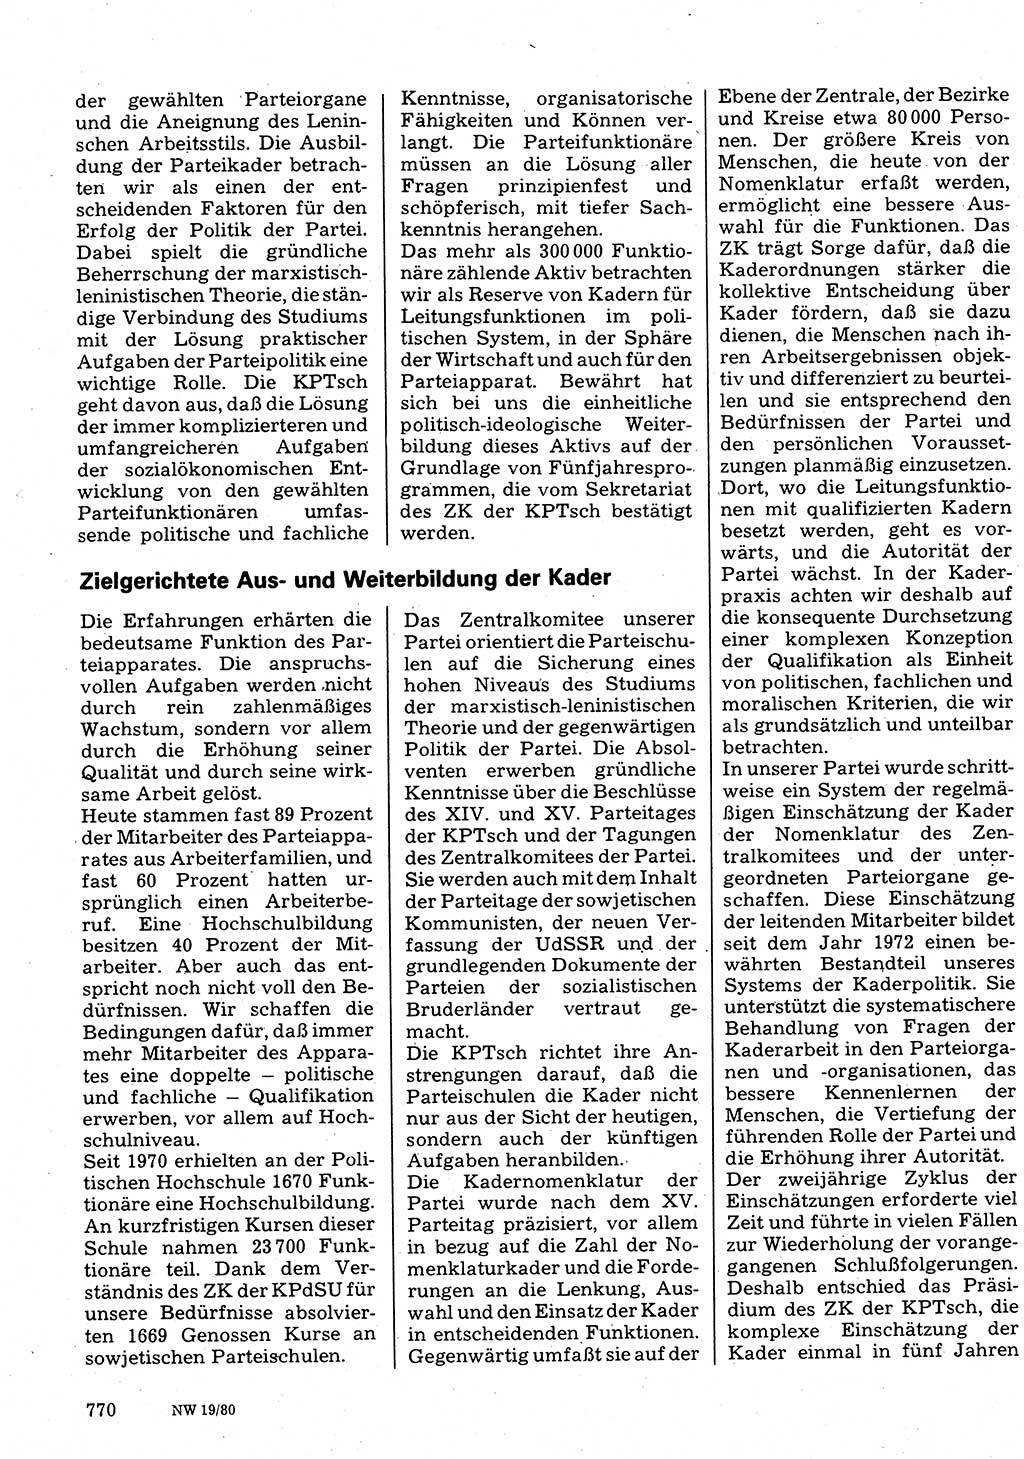 Neuer Weg (NW), Organ des Zentralkomitees (ZK) der SED (Sozialistische Einheitspartei Deutschlands) für Fragen des Parteilebens, 35. Jahrgang [Deutsche Demokratische Republik (DDR)] 1980, Seite 770 (NW ZK SED DDR 1980, S. 770)